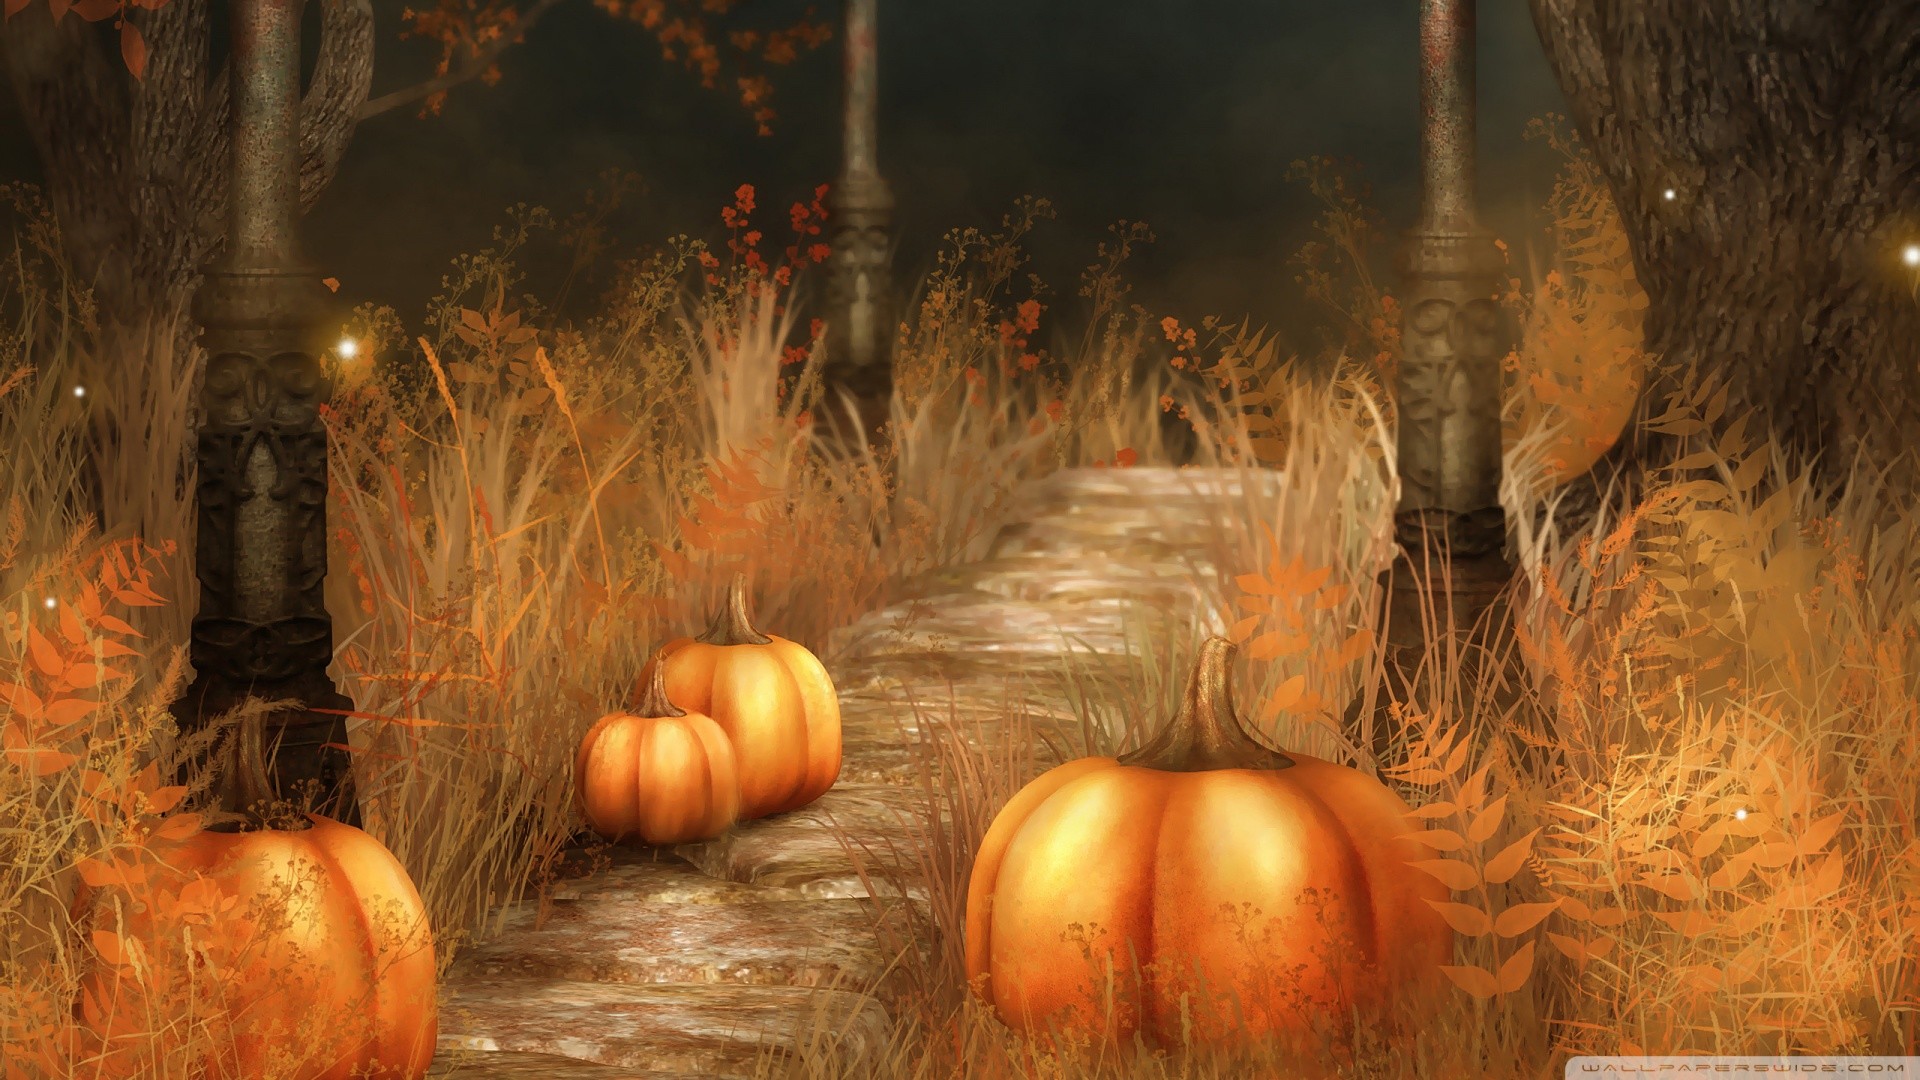 Cute Fall Pumpkins Wallpaper | Pumpkins Halloween Wallpaper Free Download